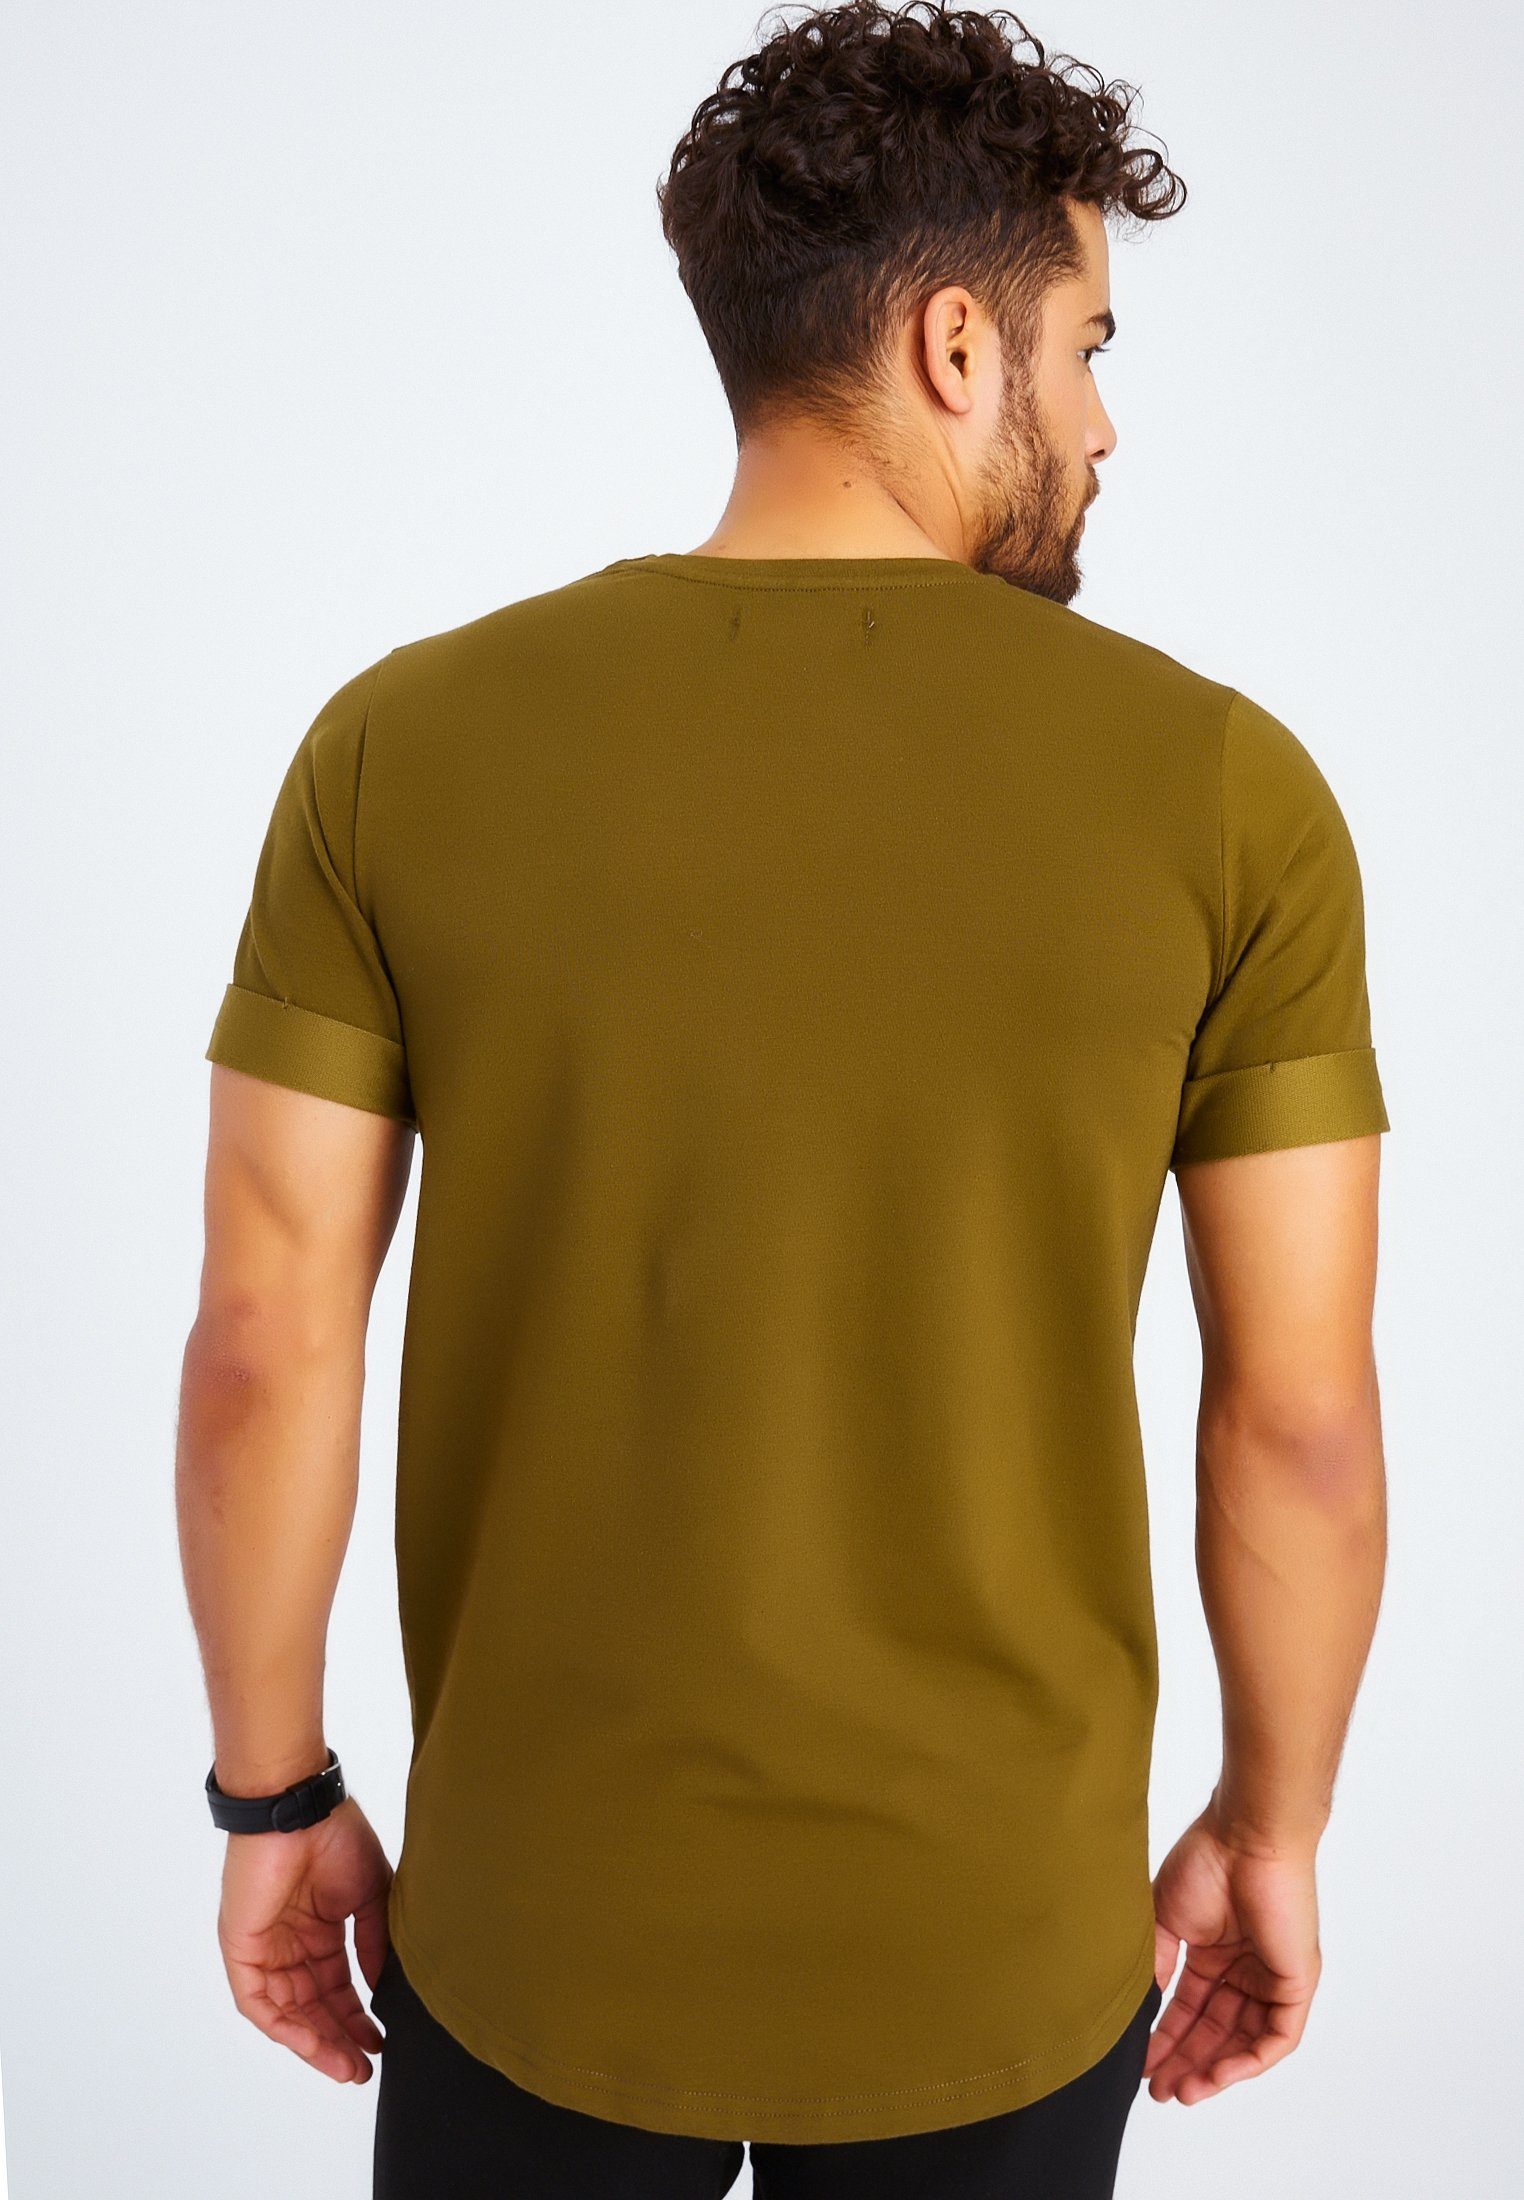 Leif Nelson T-Shirt Herren T-Shirt khaki Rundhals LN-6368